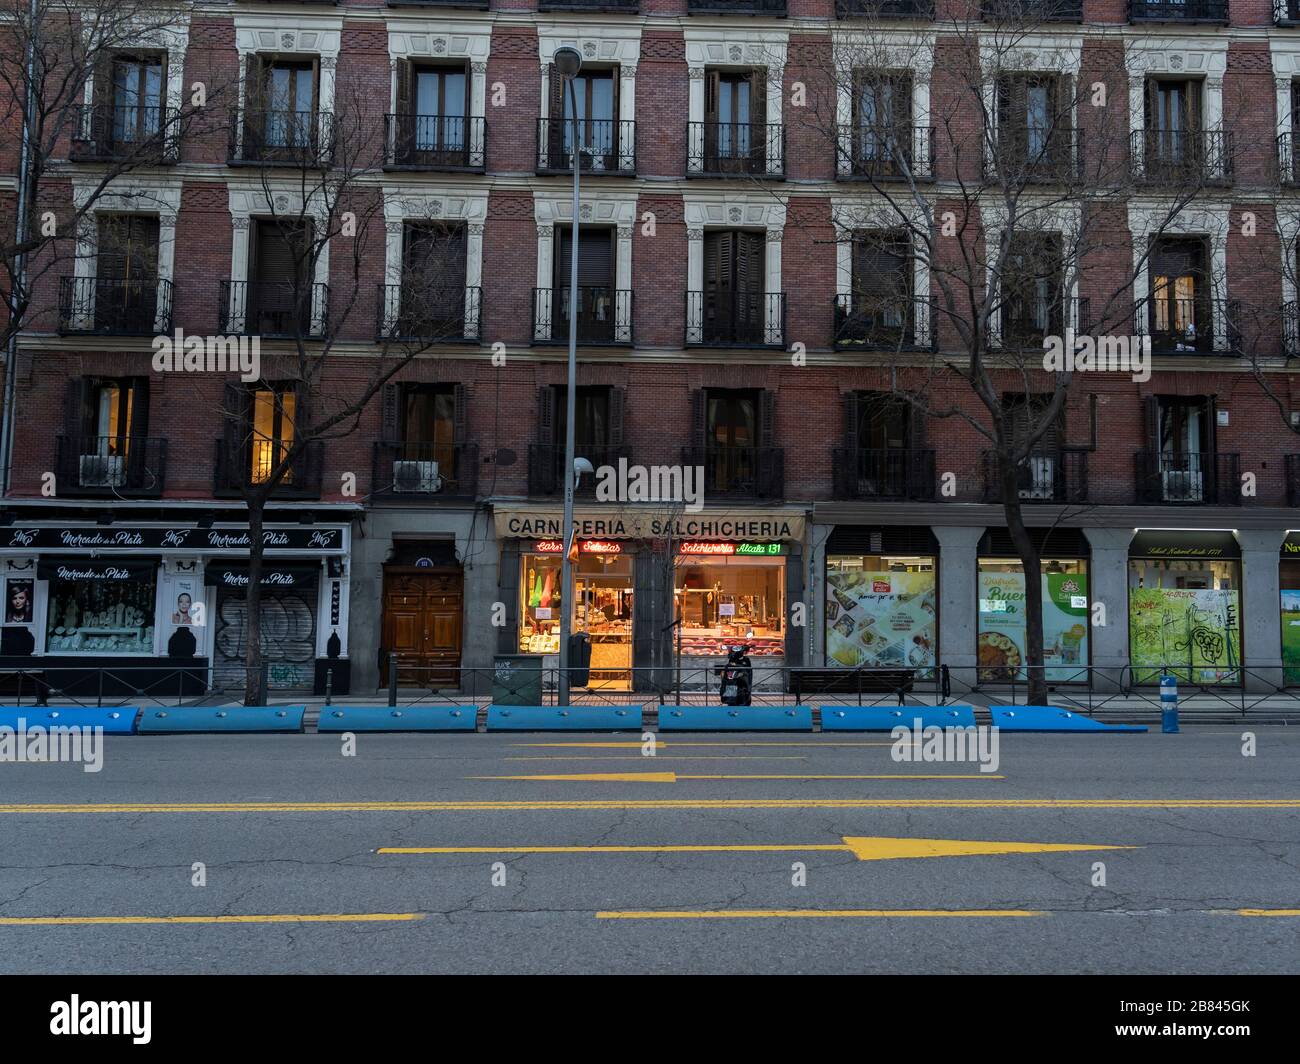 Un macellaio rimane aperto nel mezzo di una strada vuota Alcalá, nel centro di Madrid, seguendo il blocco dei coronavirus. A partire dal 15 marzo, ogni negozio che non ha bisogno di prima deve rimanere chiuso fino a quando lo stato di allarme dura. Foto Stock